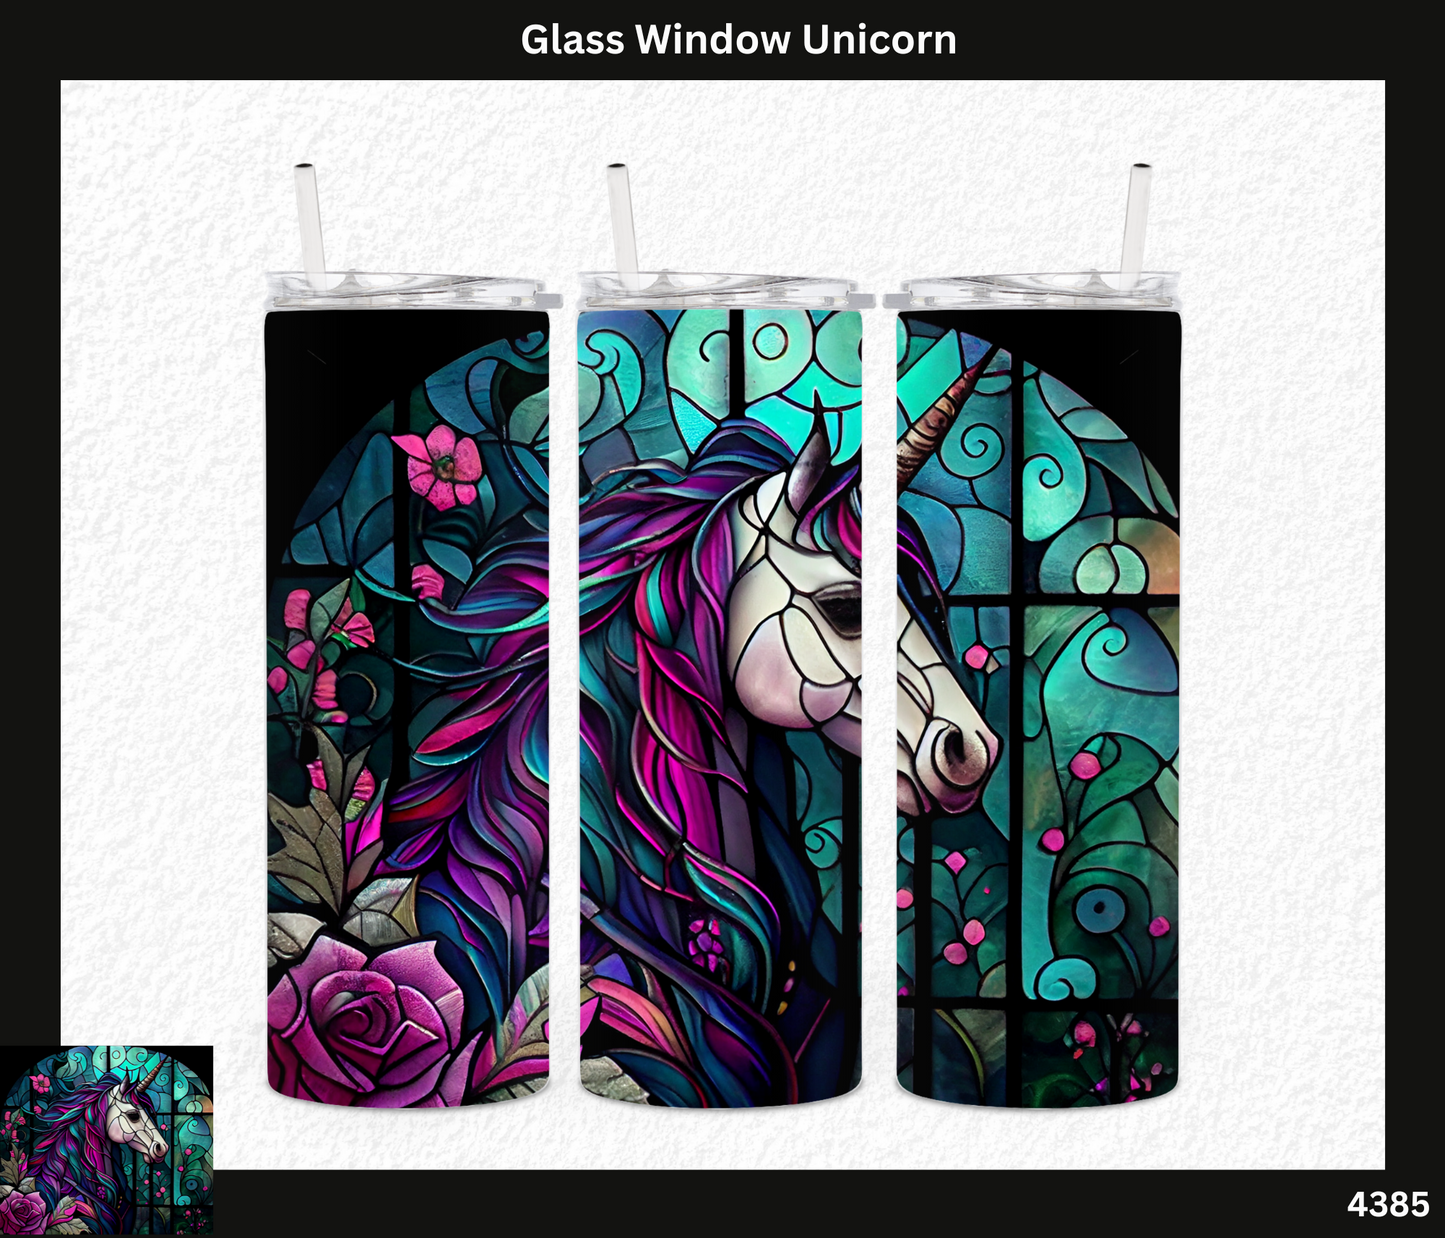 Glass Window Unicorn